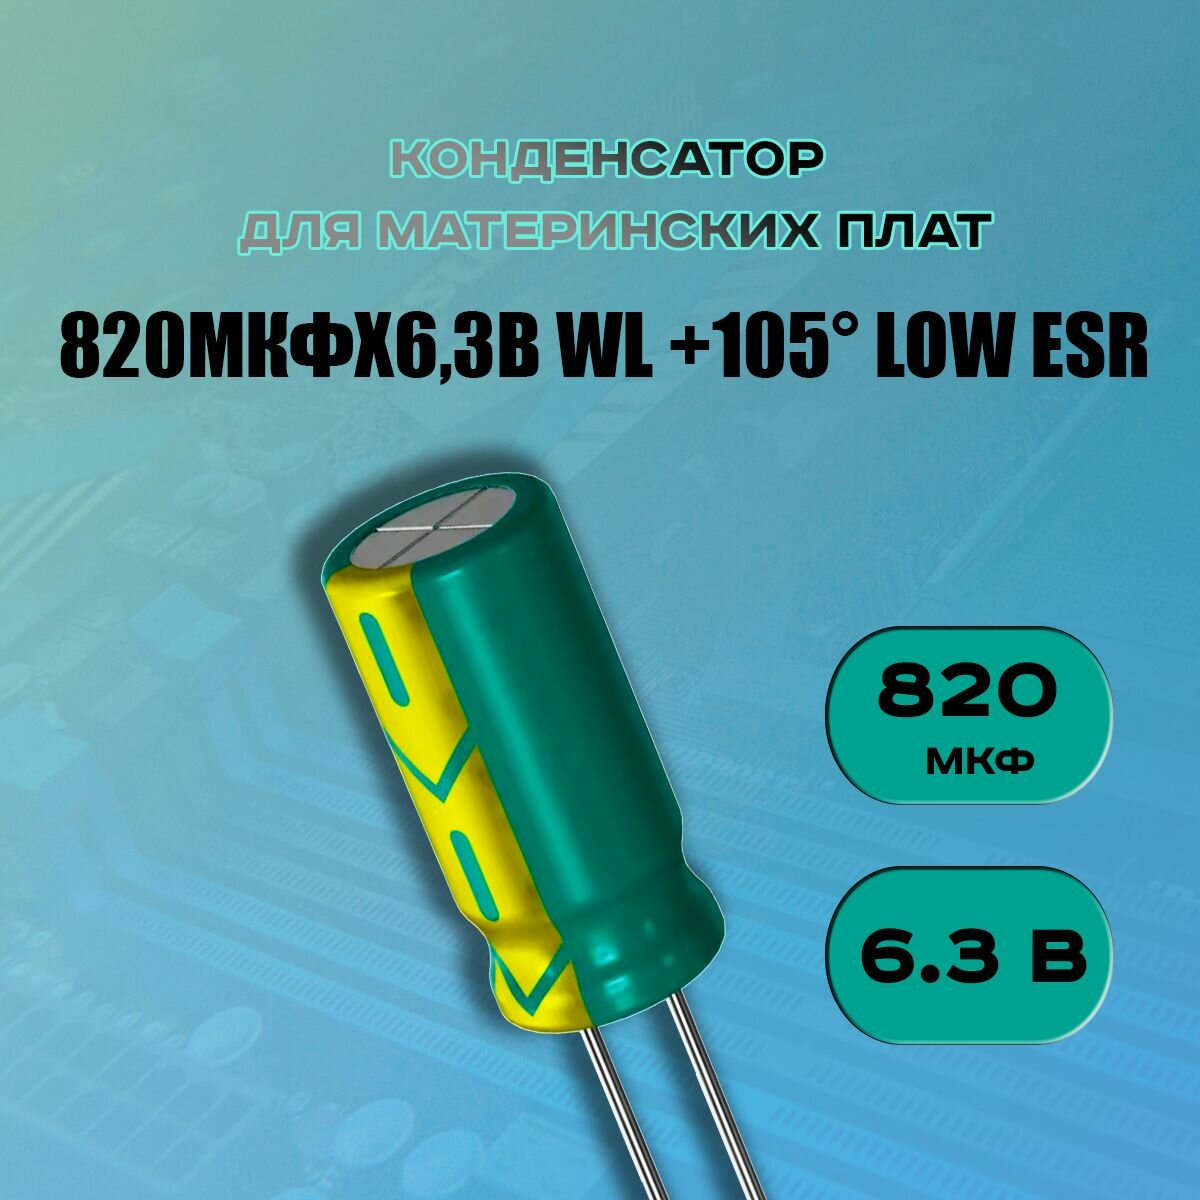 Конденсатор для материнской платы 820 микрофарат 6.3 Вольт (820uf 6.3V WL +105 LOW ESR) - 1 шт.